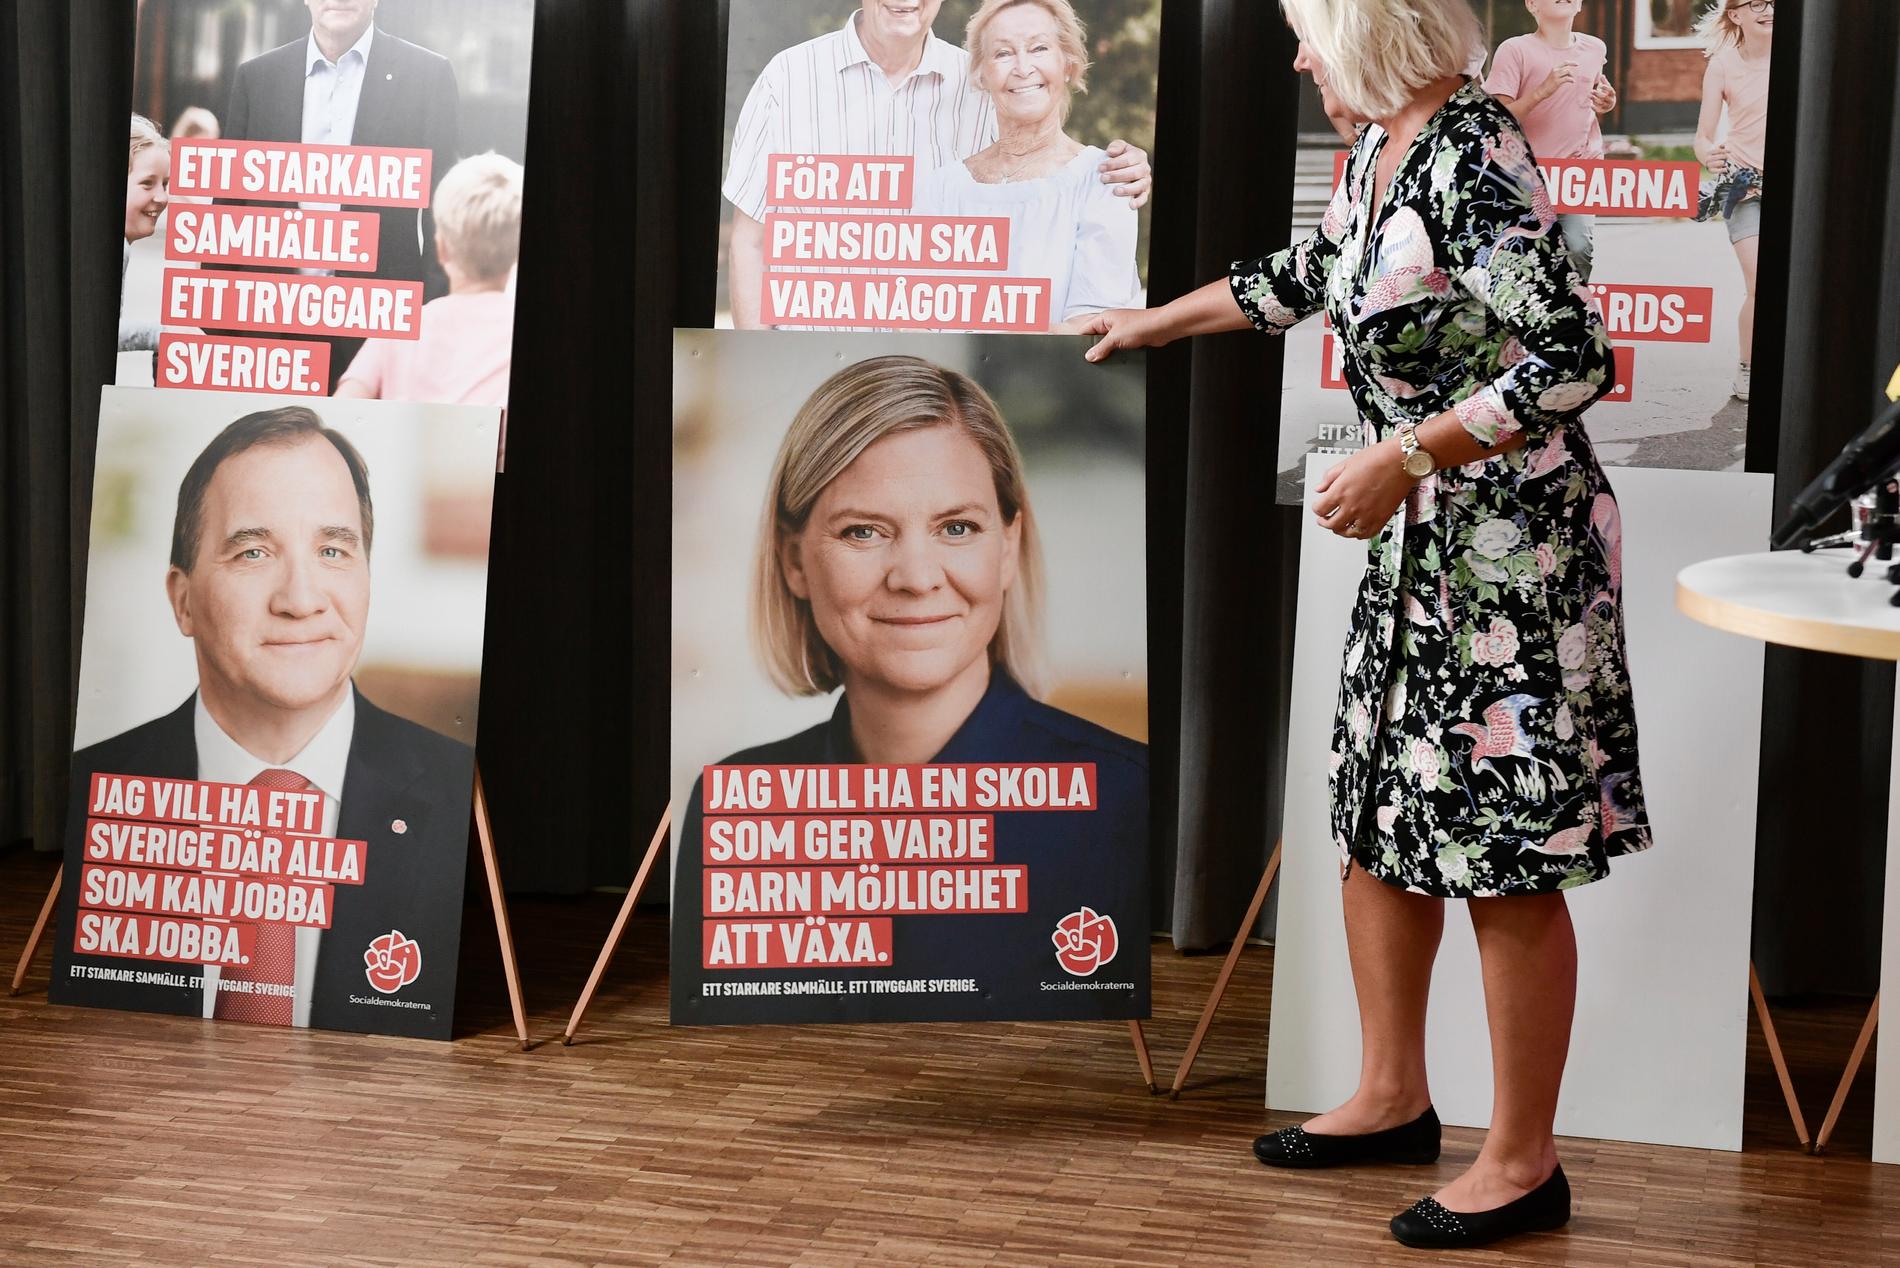 De fyra "vallokomotiven" Stefan Löfven, finansminister Magdalena Andersson, utrikesminister Margot Wallström och försvarsminister Peter Hultqvist är i fokus på årets valaffischer.